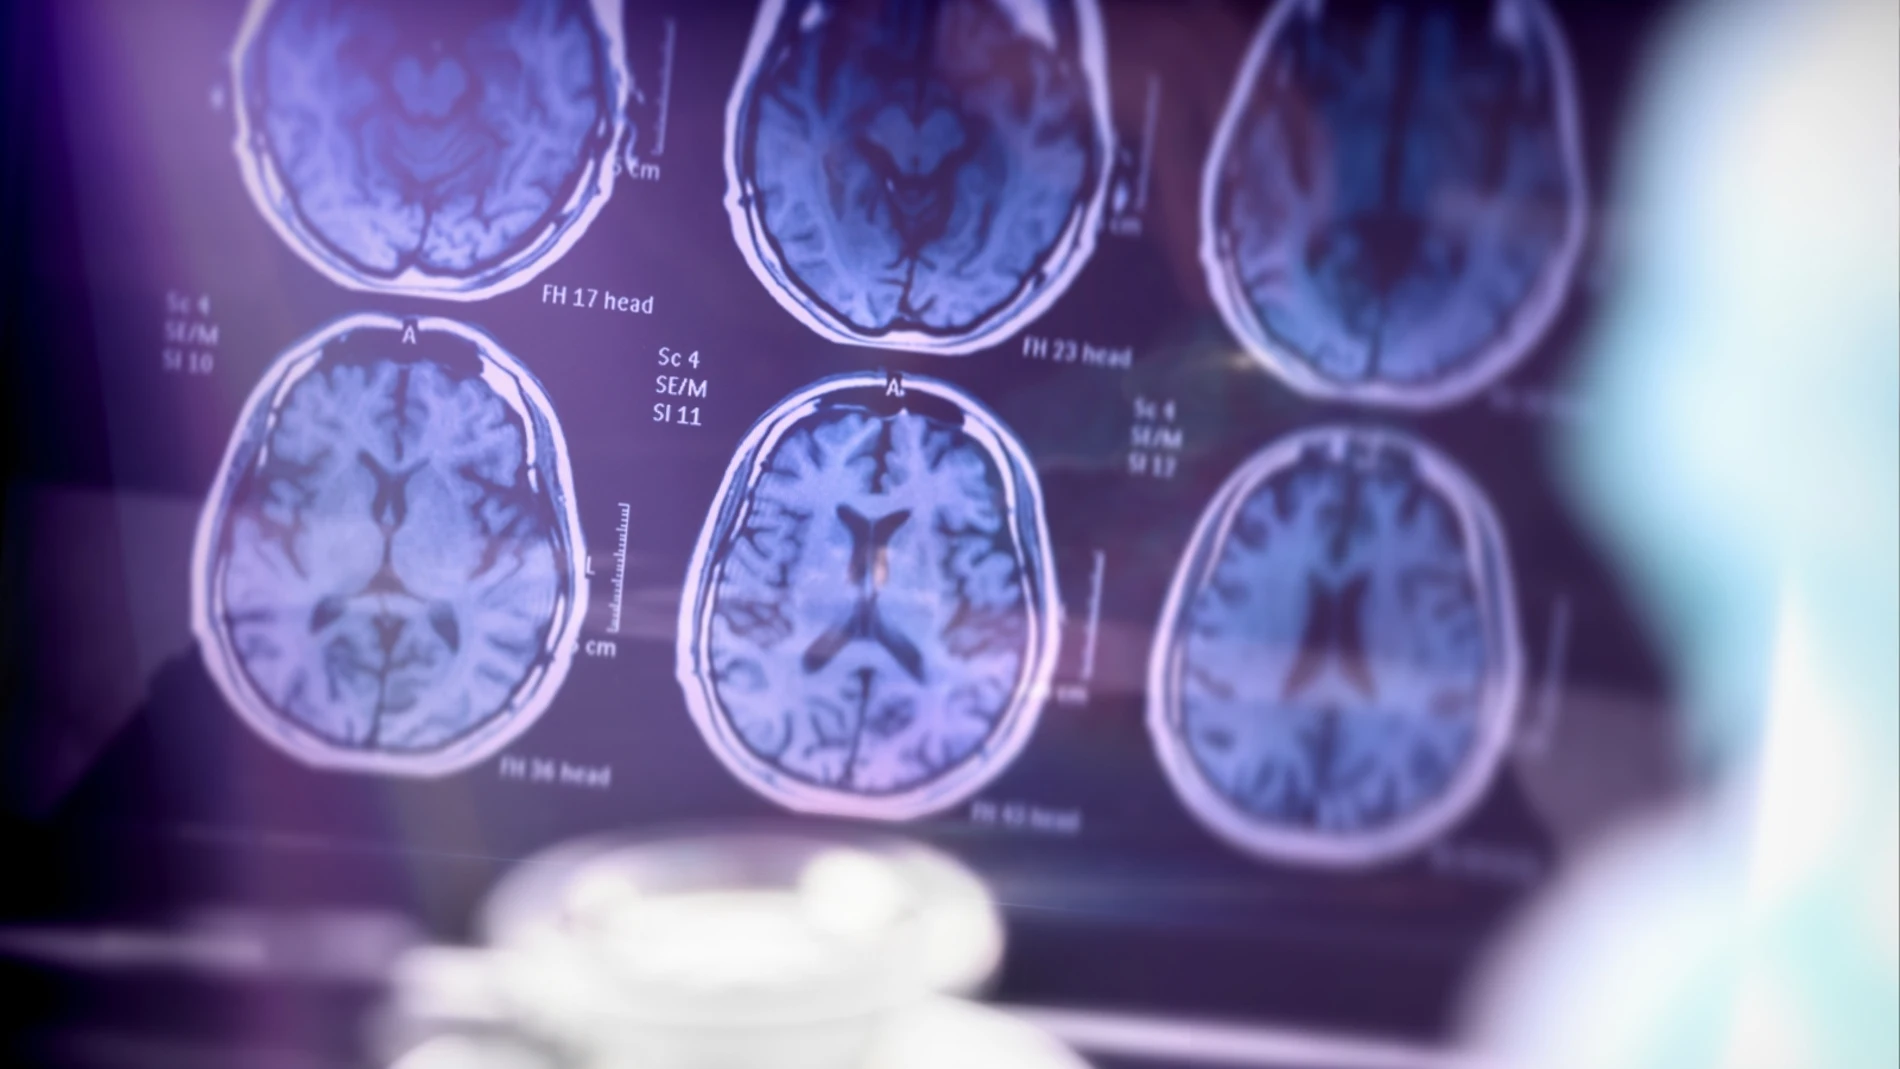 Científicos holandeses descubren cinco variantes del Alzheimer que requieren tratamientos diferenciados